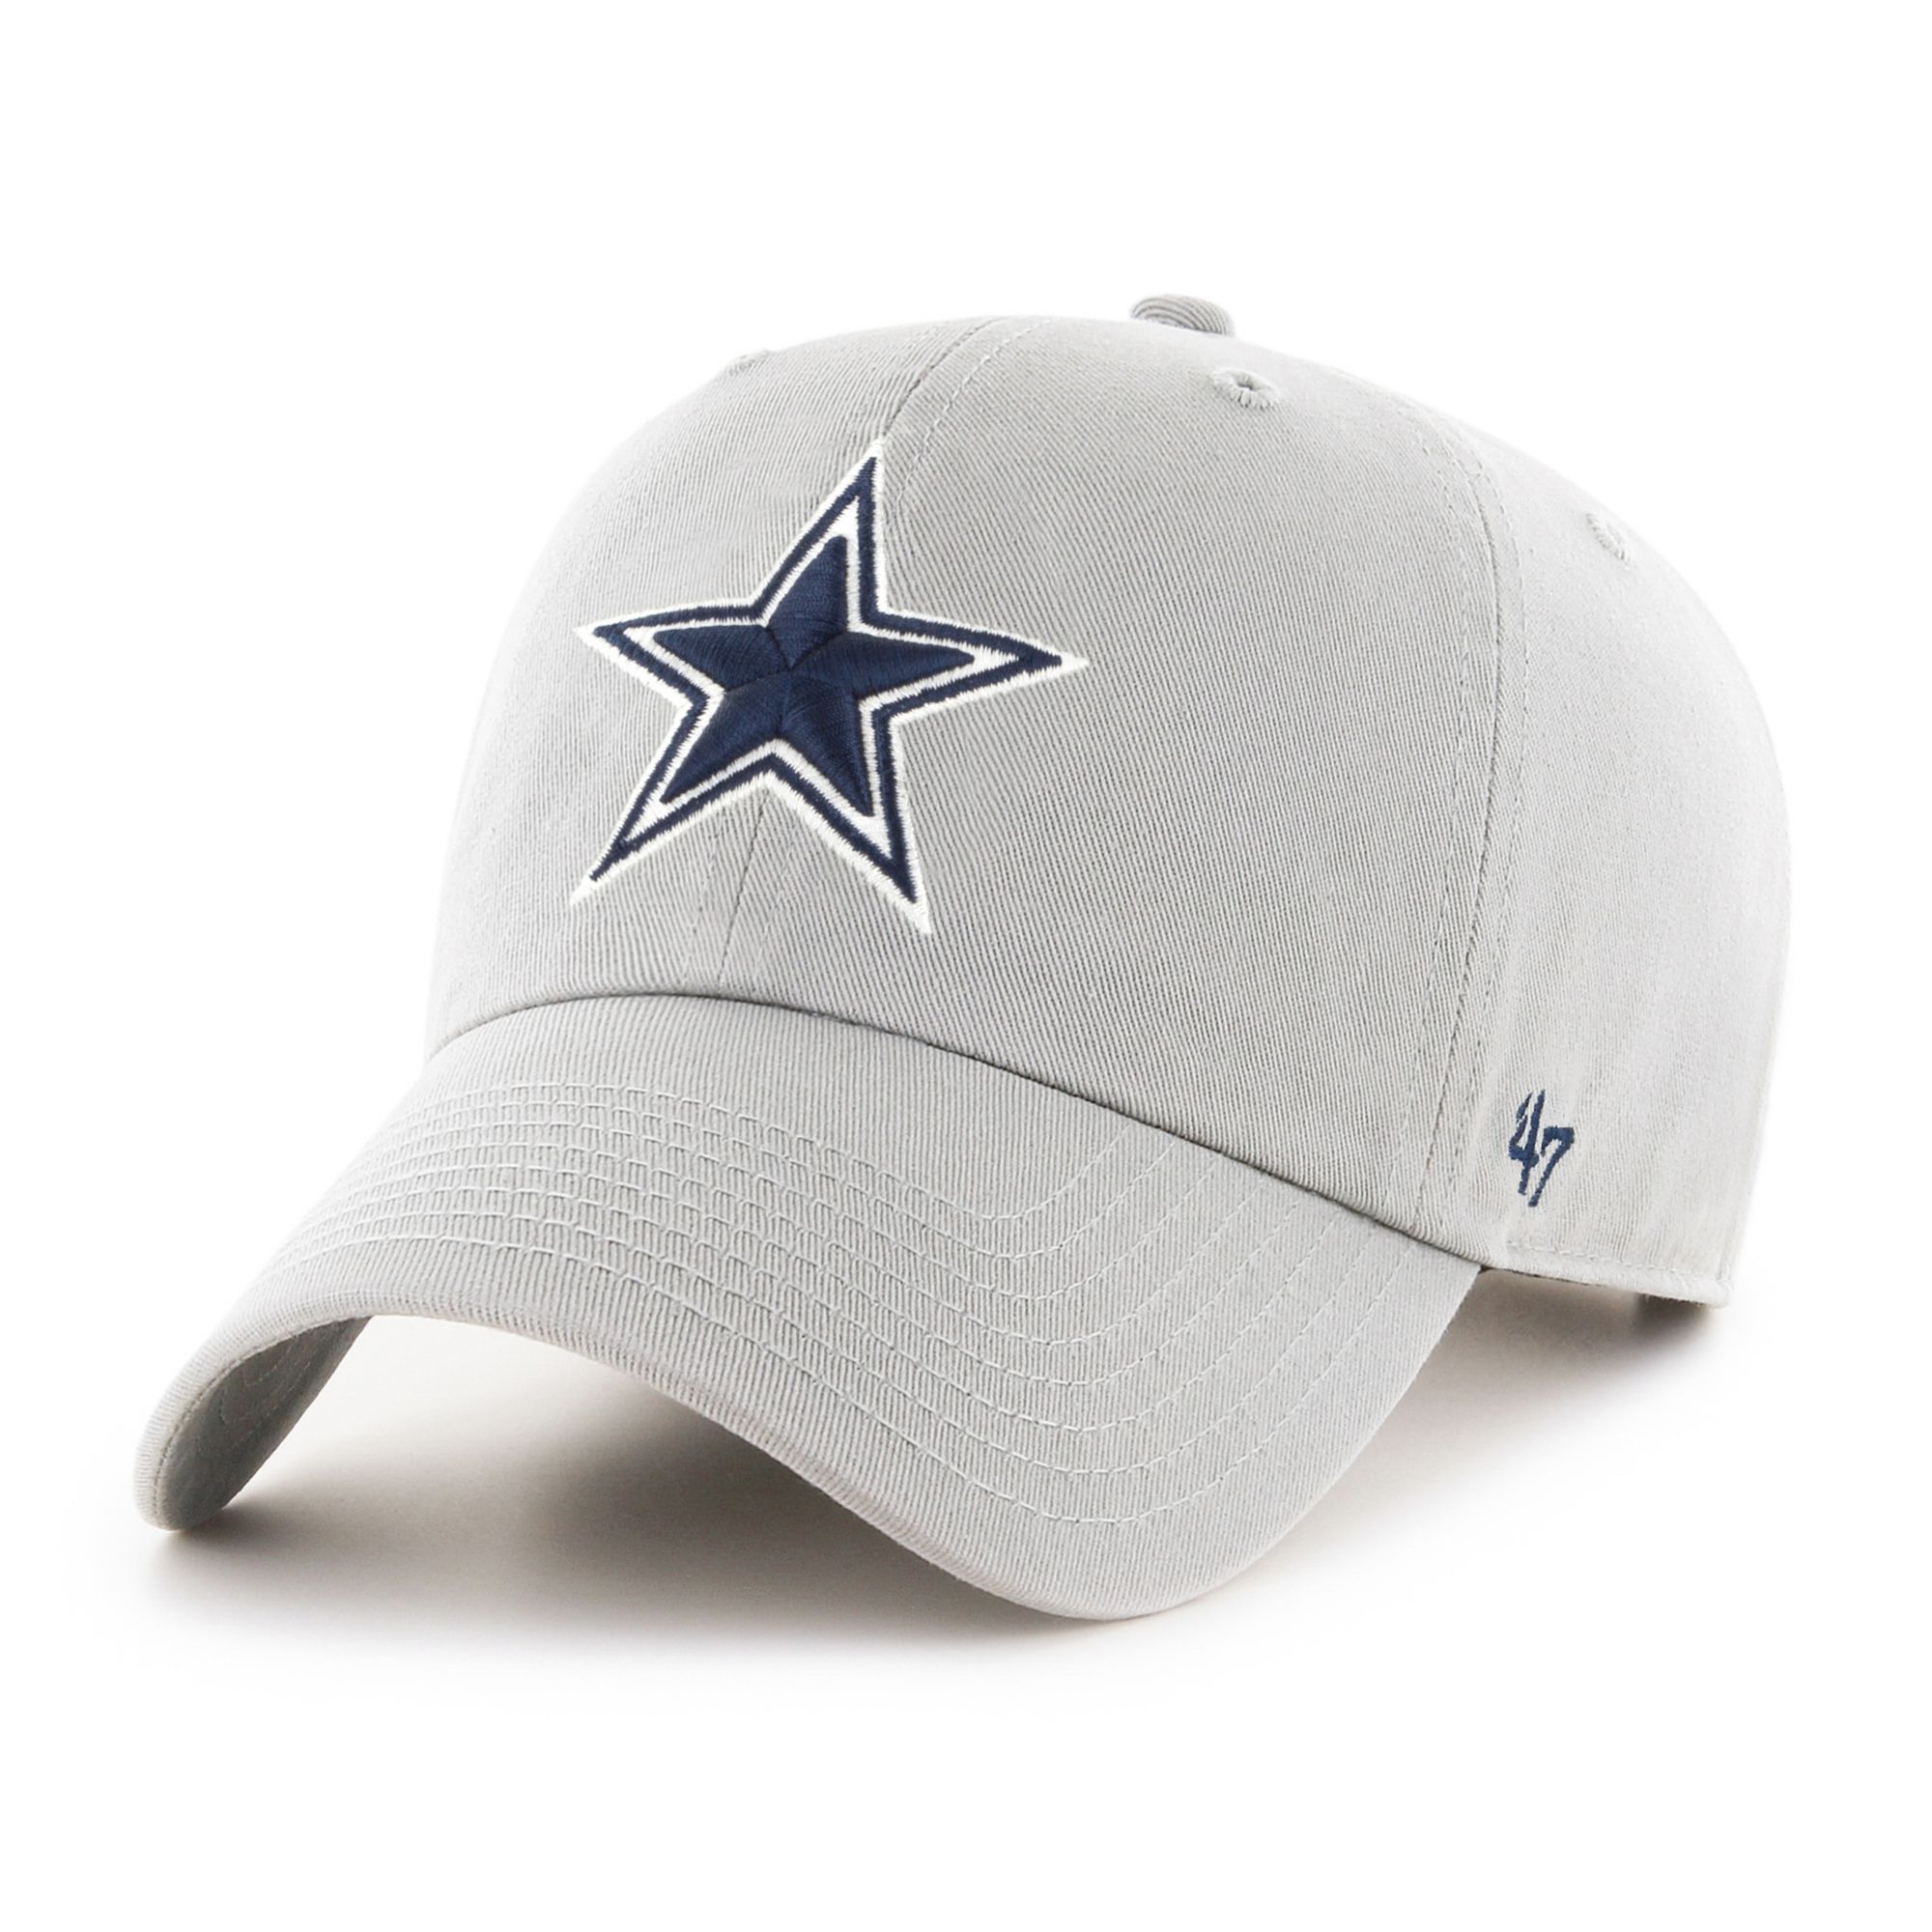 Men's '47 Black Dallas Cowboys Primary Clean Up Adjustable Hat